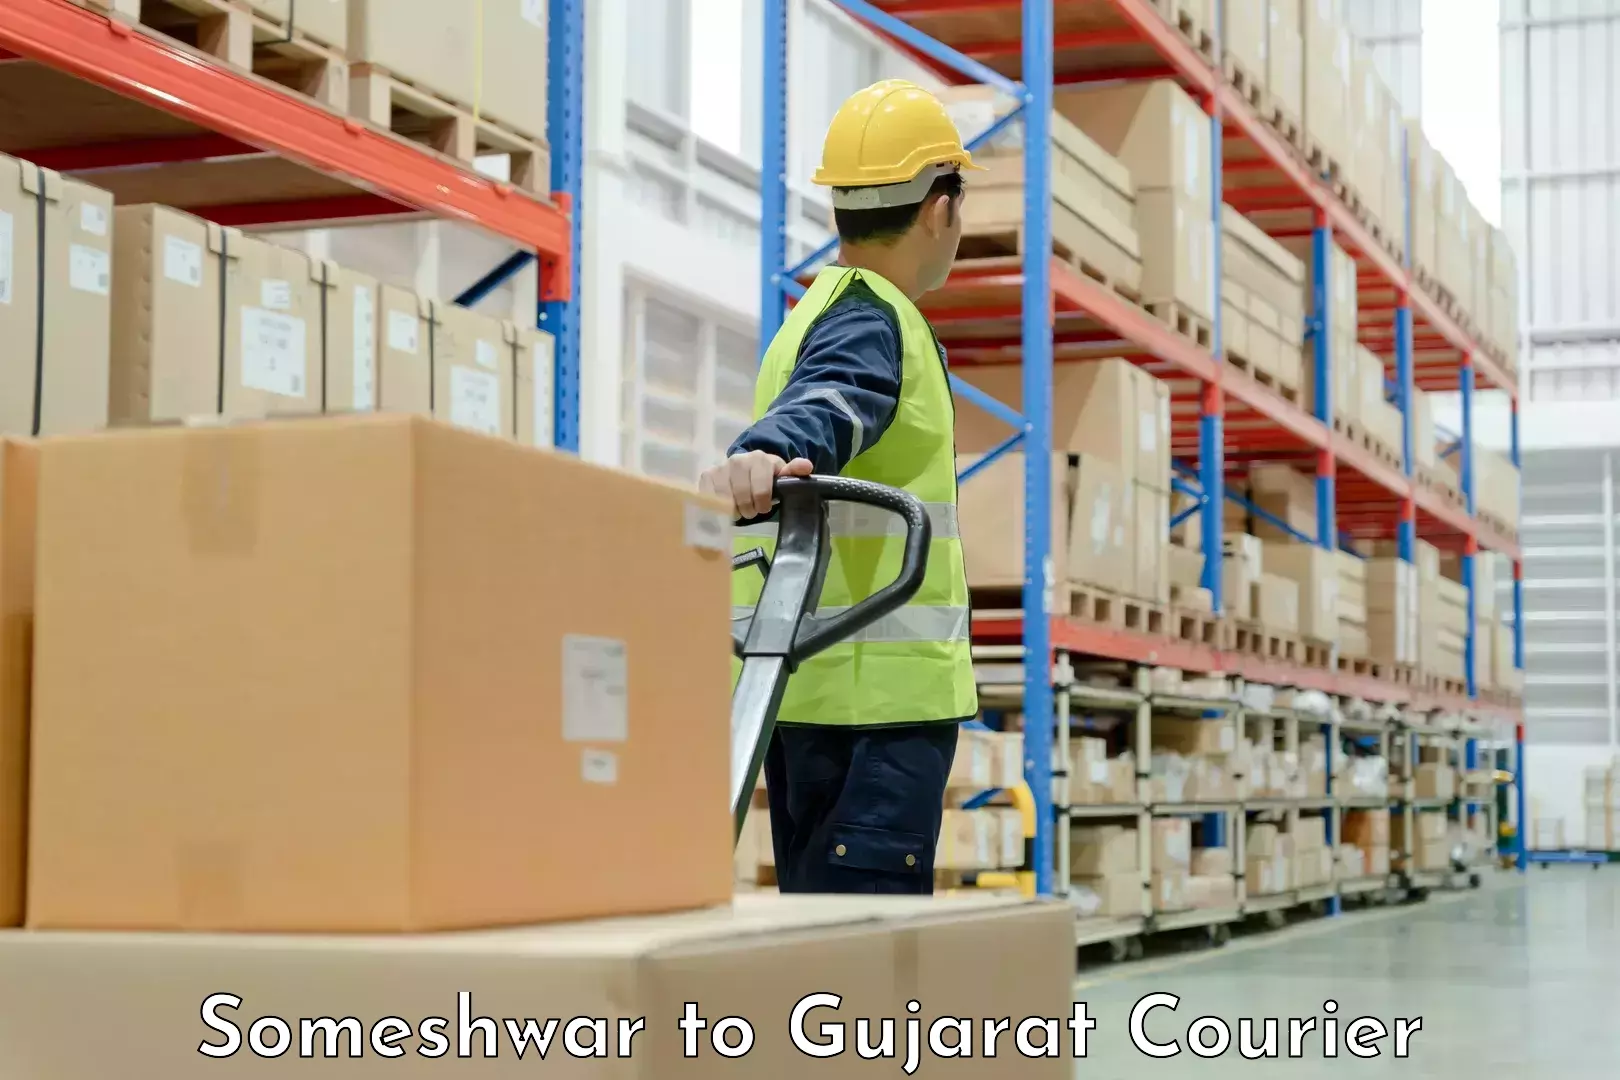 Furniture moving experts Someshwar to Gujarat